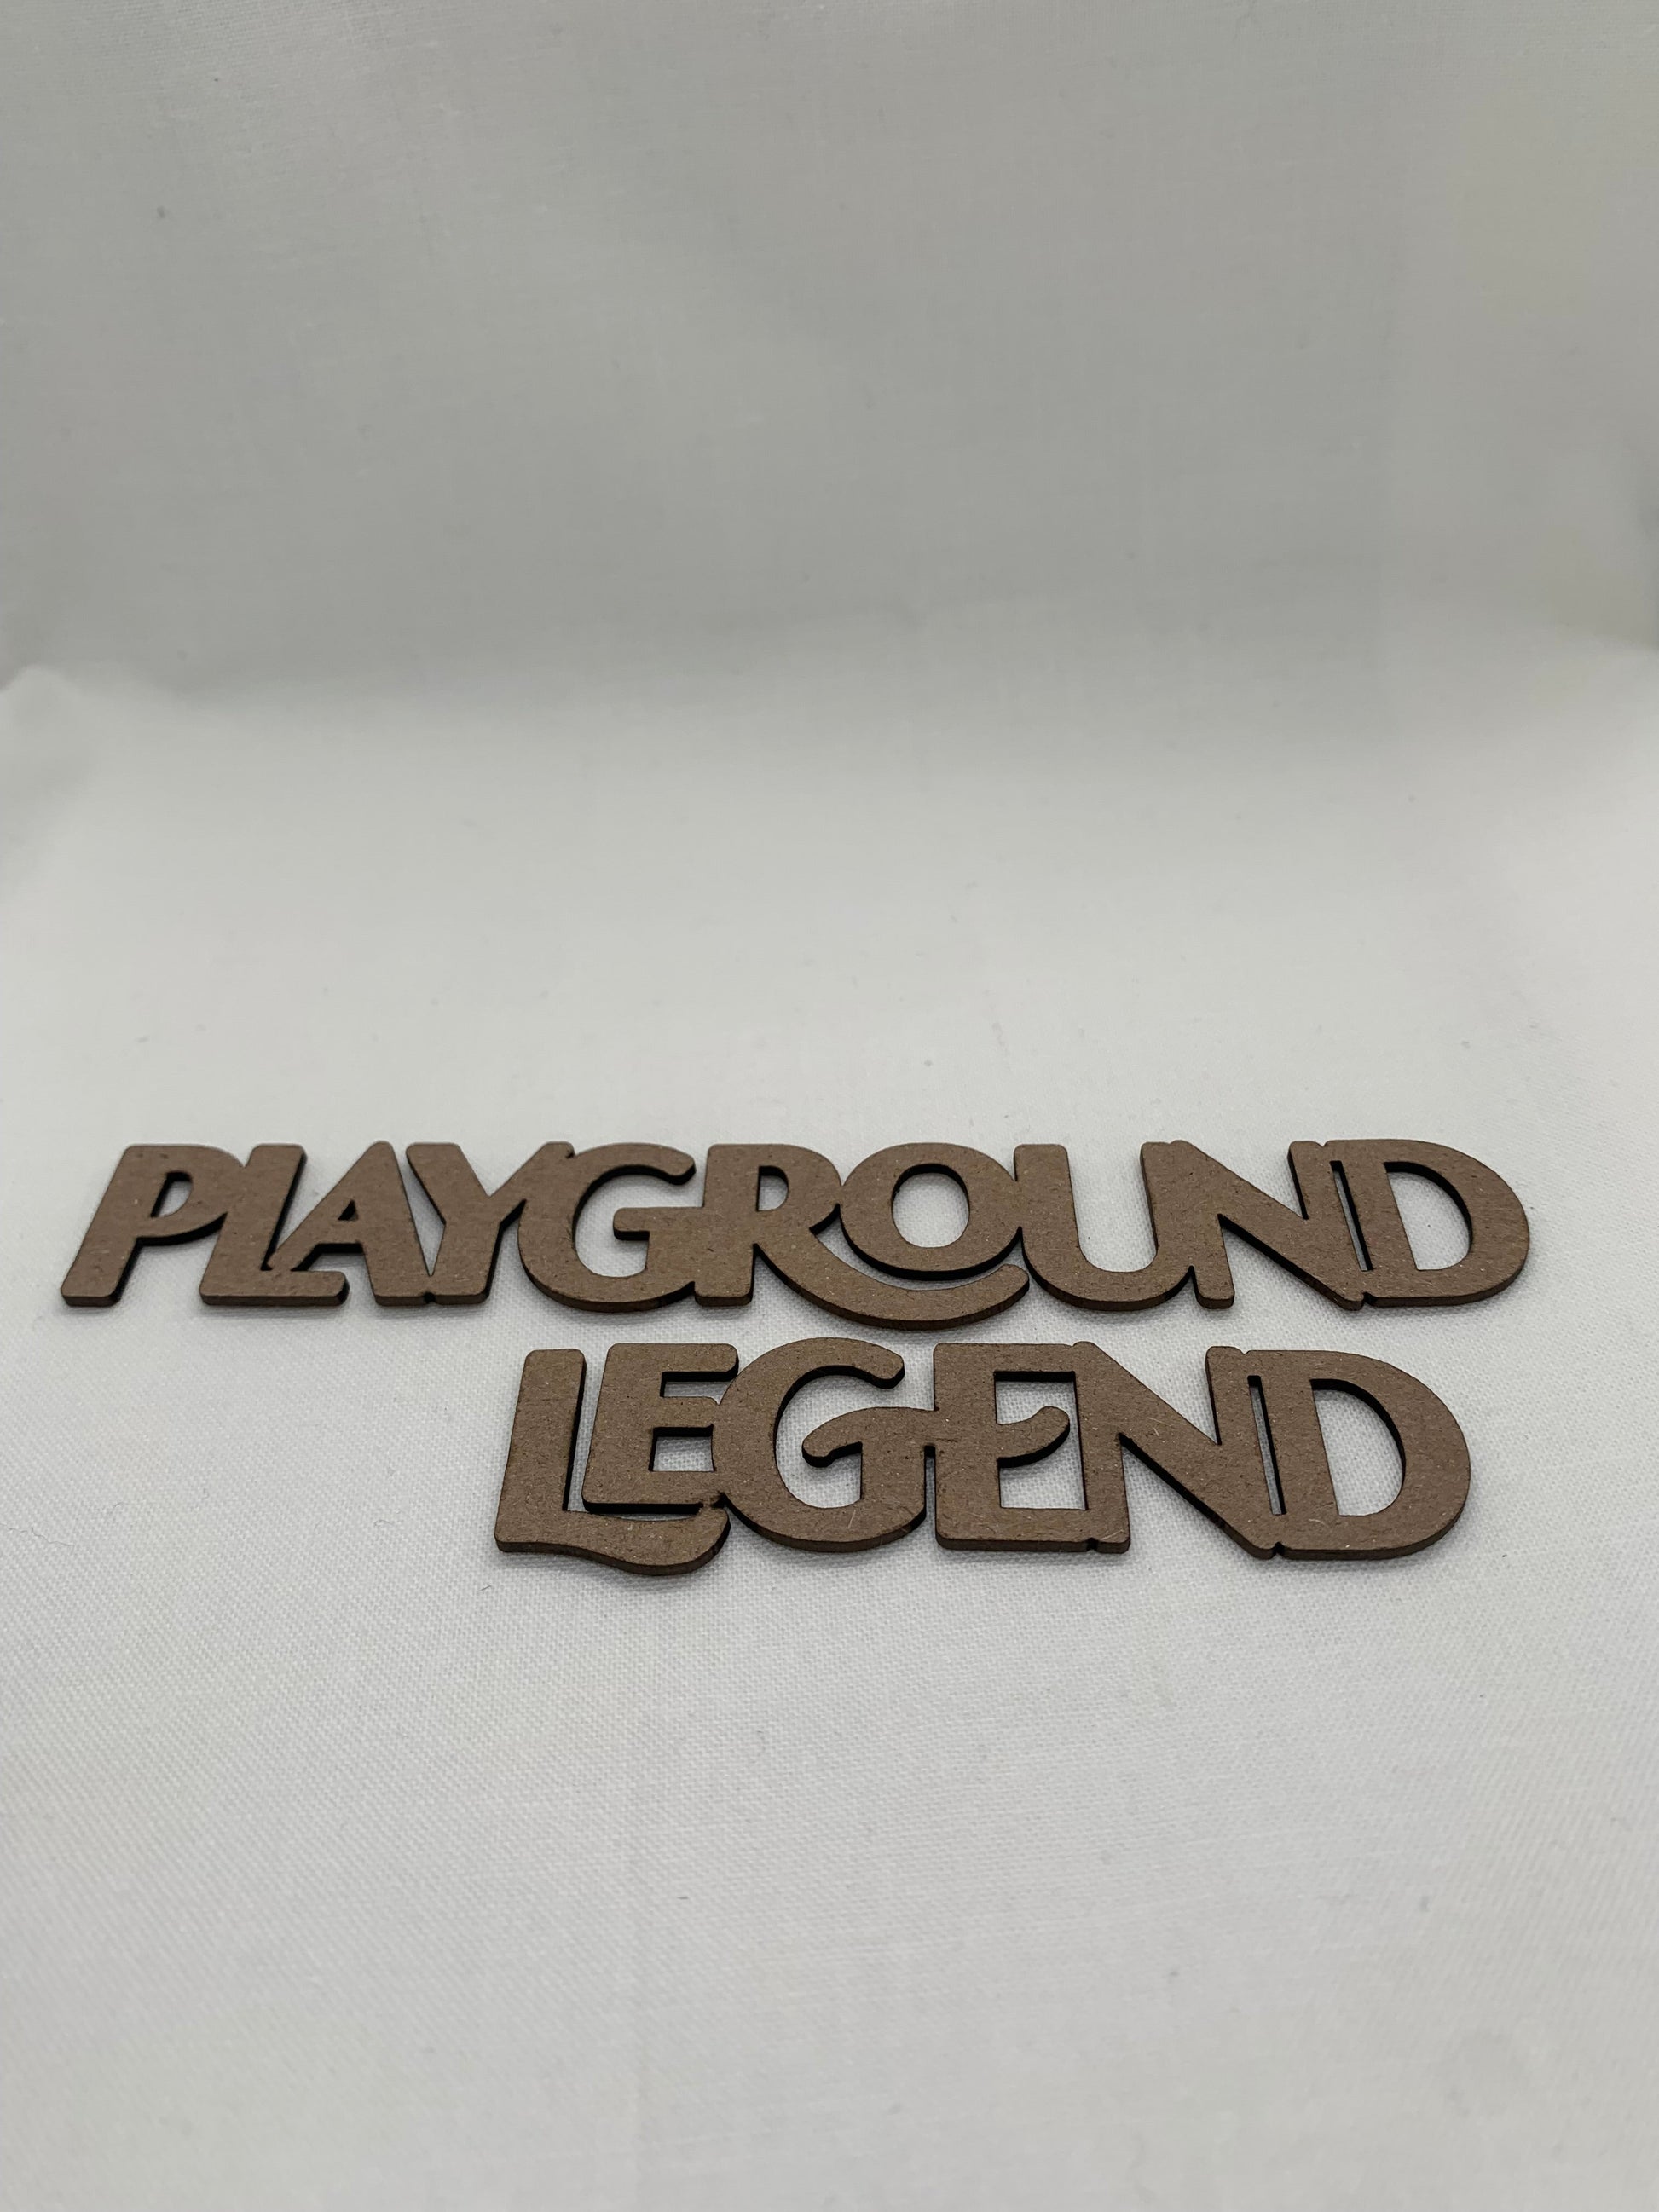 Playground Legend - Creative Designs By Kari